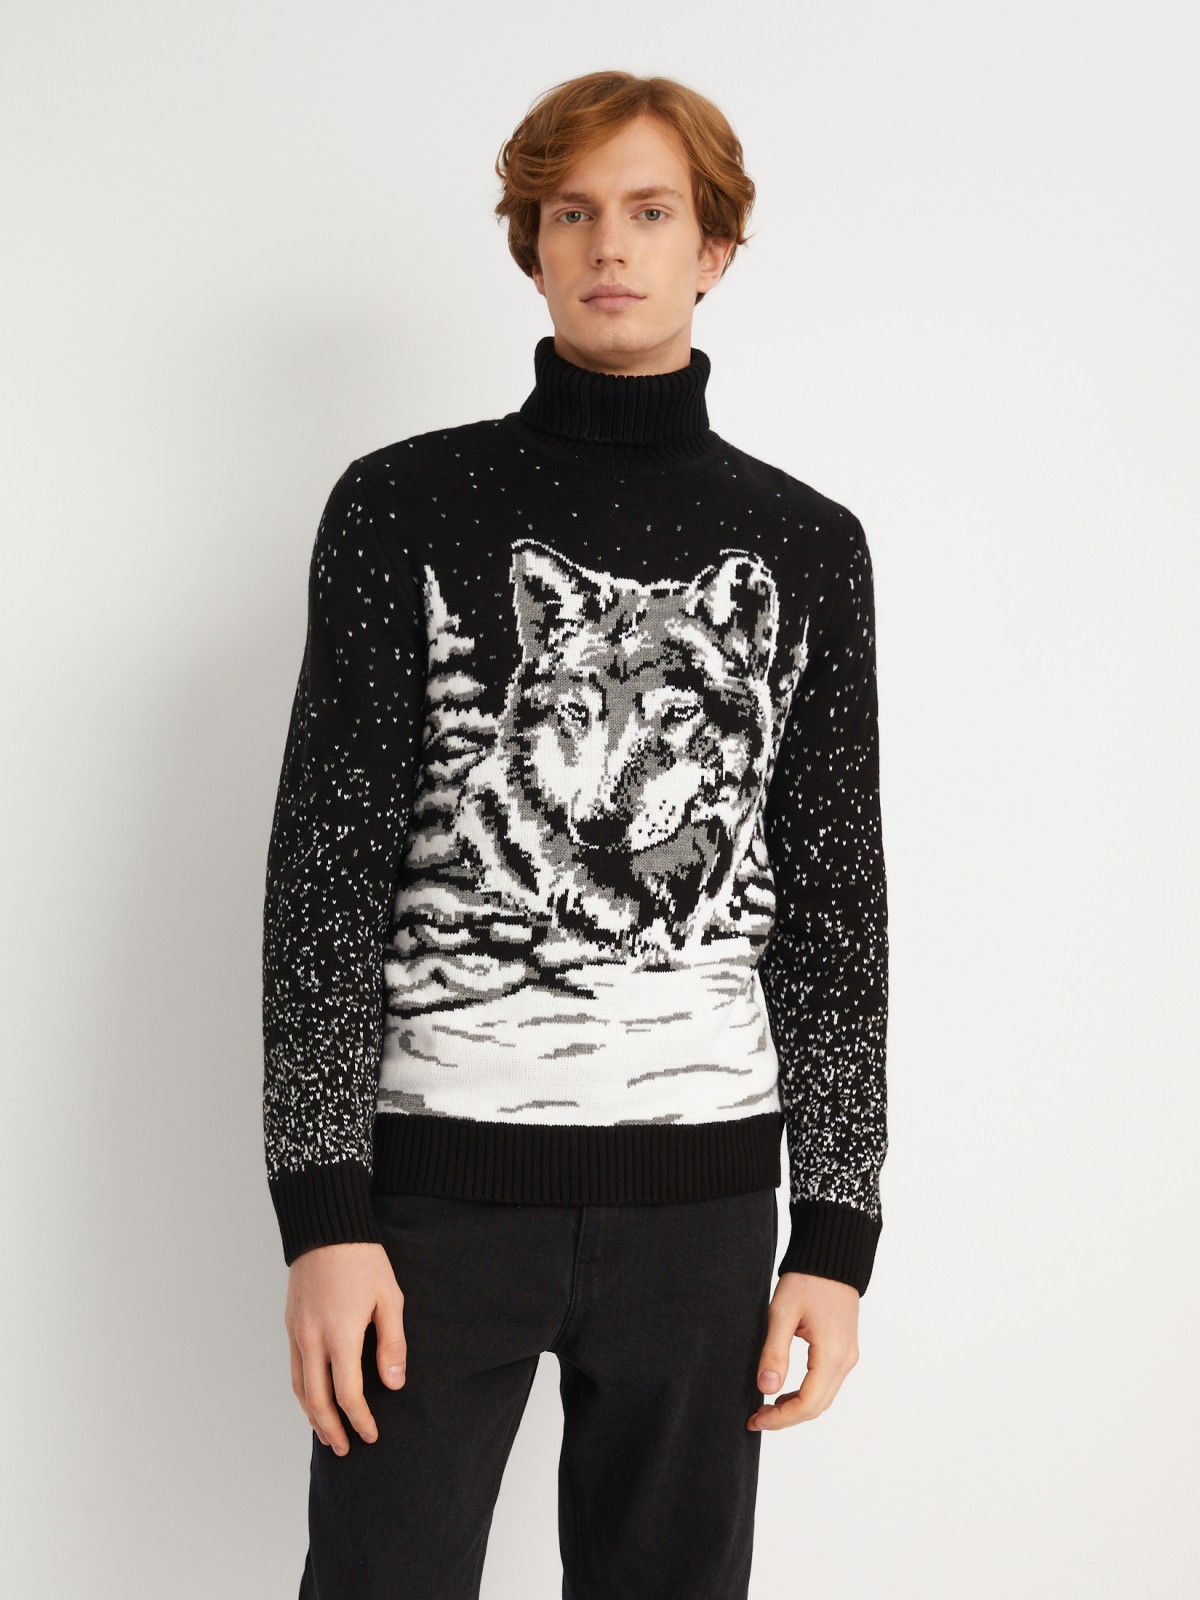 Вязаный свитер из акрила с волком zolla 013446123023, цвет черный, размер S - фото 3